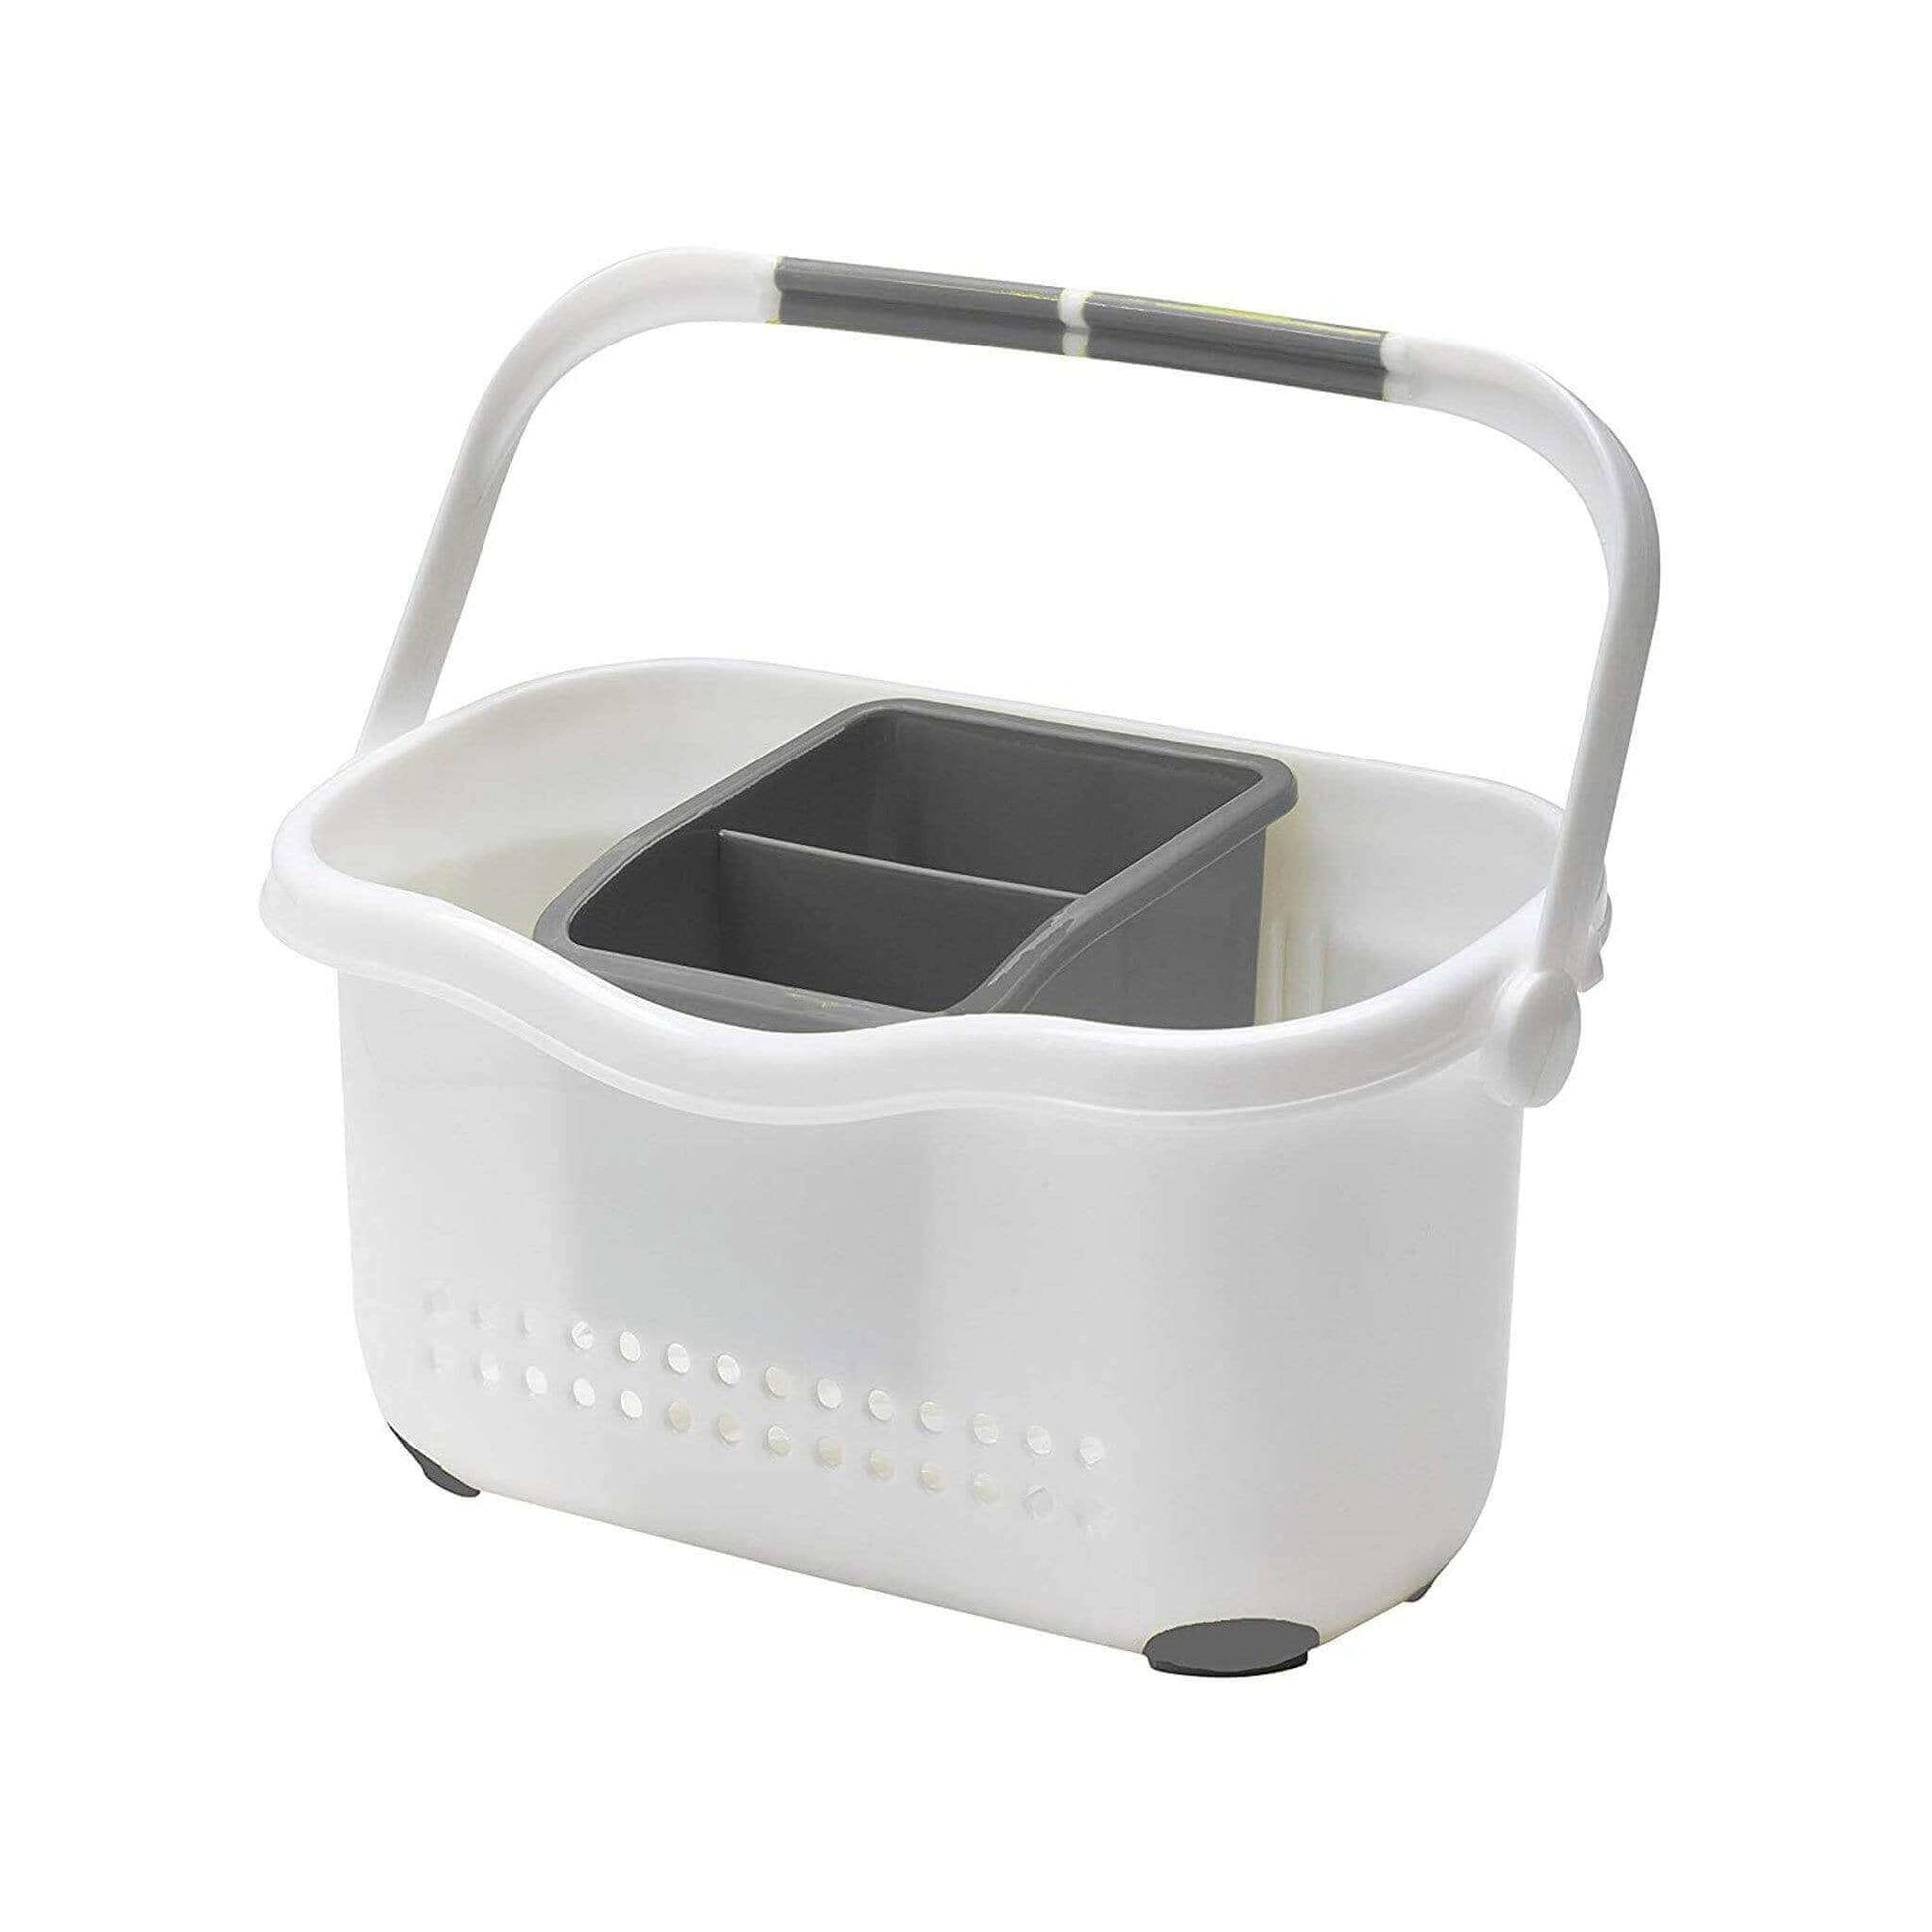 Kitchenware  -  Addis White Grey Sink Caddy  -  50143277